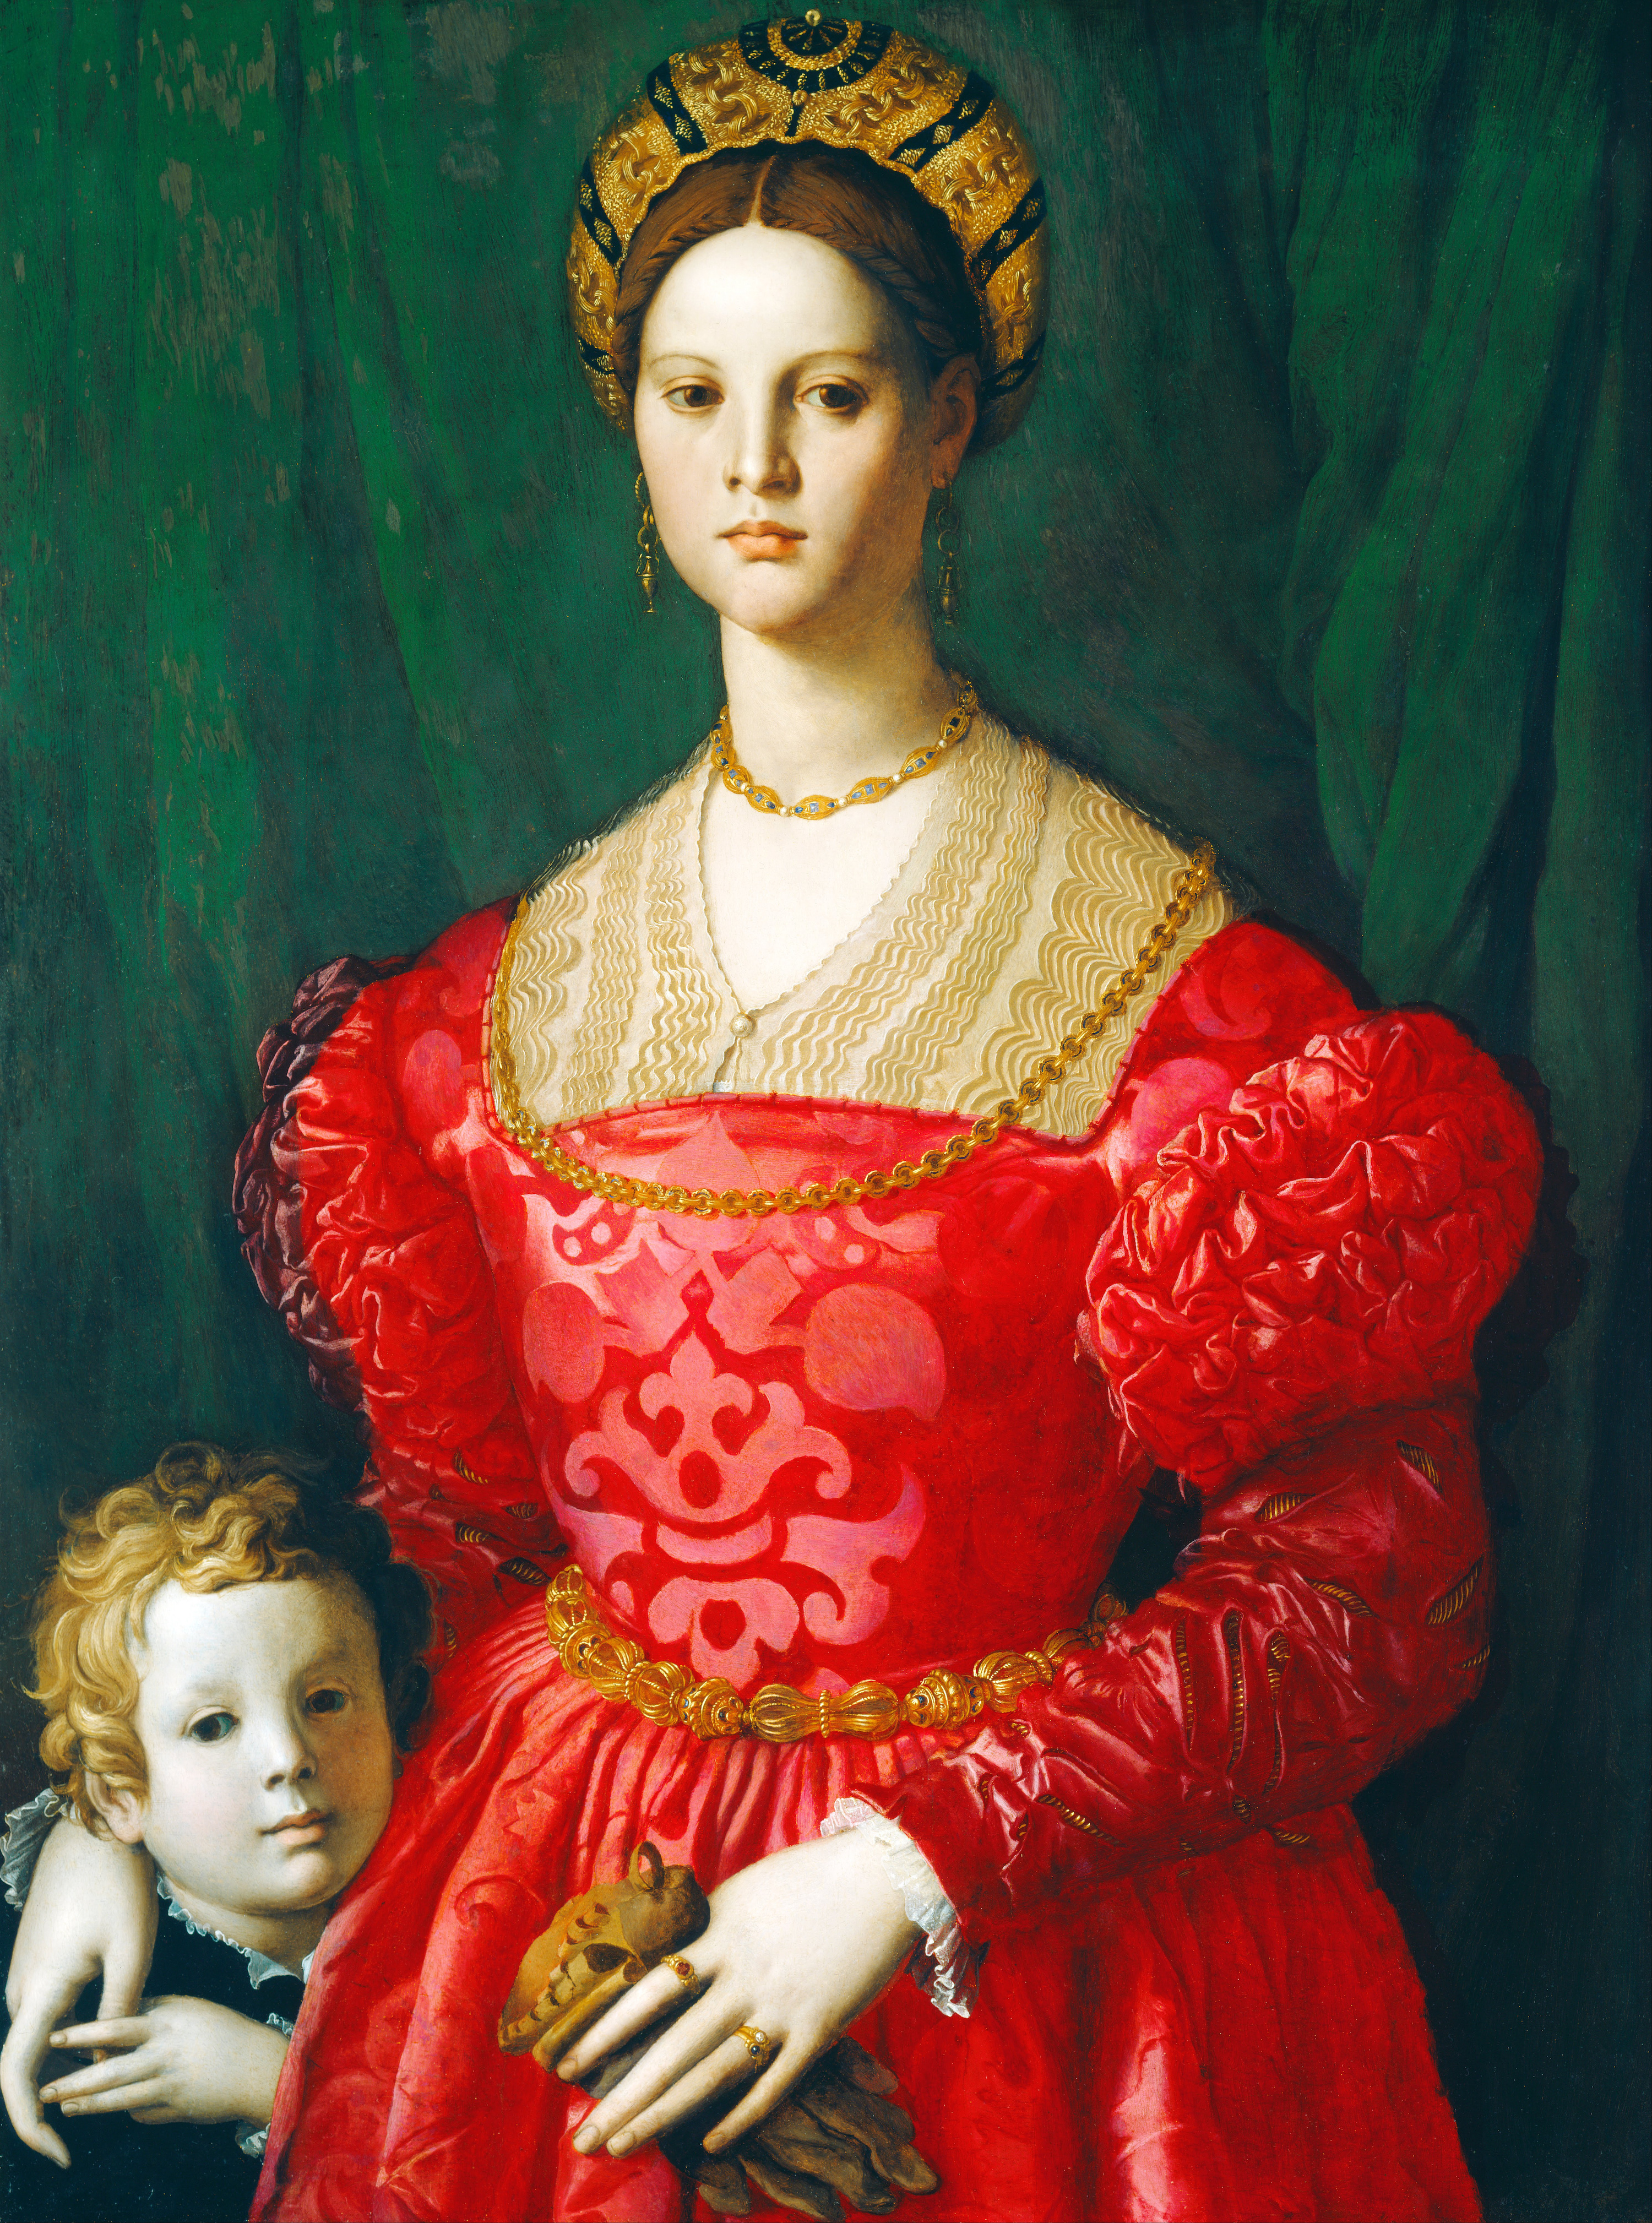 Una mujer joven y su pequeño by Agnolo Bronzino - c. 1540 - 76 x 99.5 cm National Gallery of Art